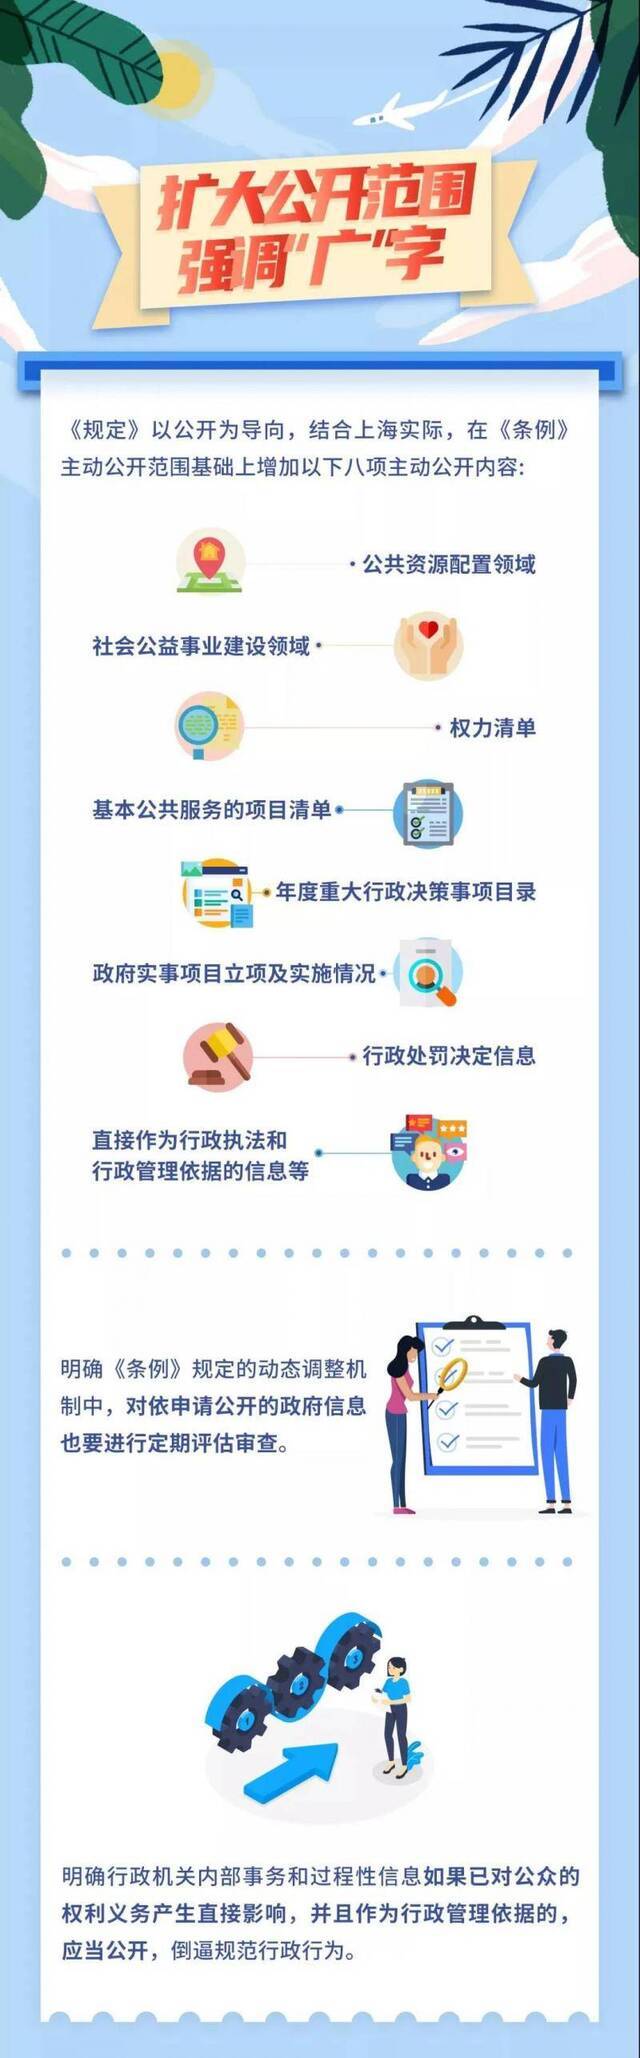 新版《上海市政府信息公开规定》下月施行